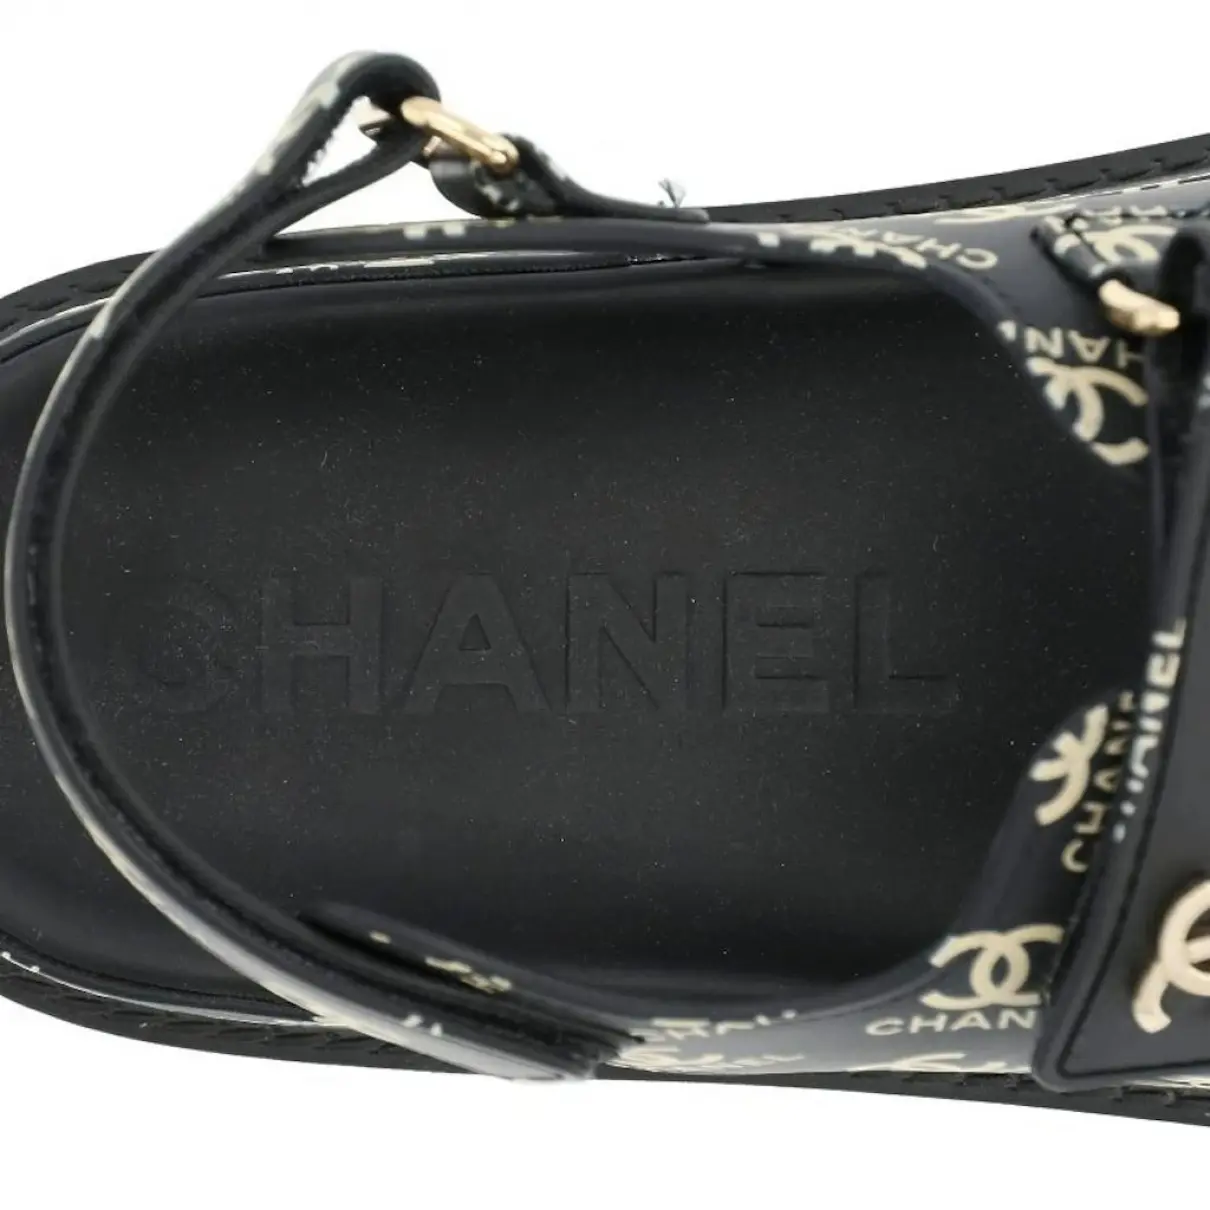 Dad Sandals sandal Chanel